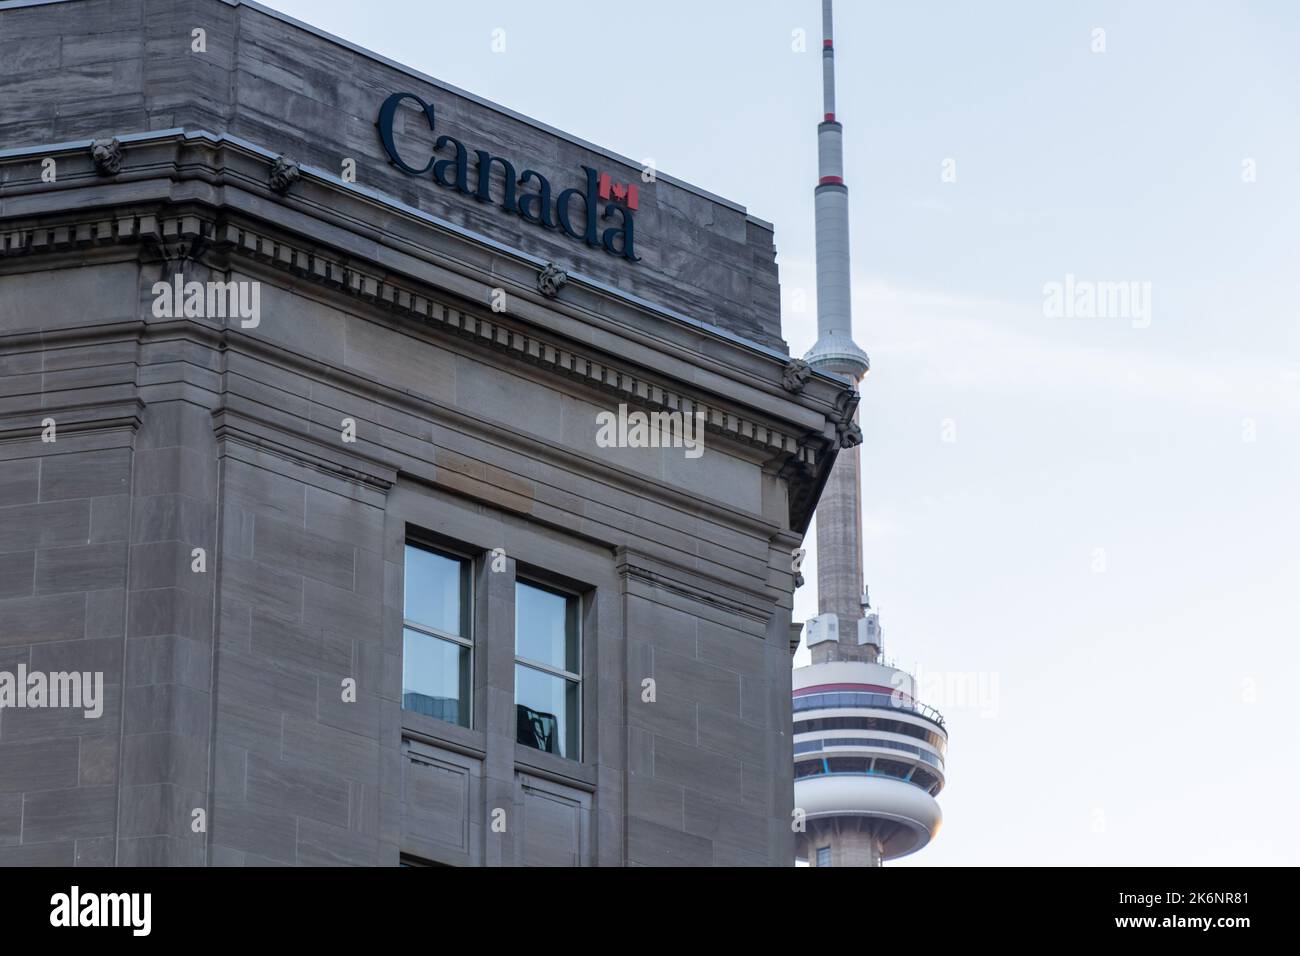 Le logo du gouvernement du Canada est visible au sommet d'un édifice, l'édifice public Dominion, au centre-ville de Toronto, avec la Tour CN en arrière-plan. Banque D'Images